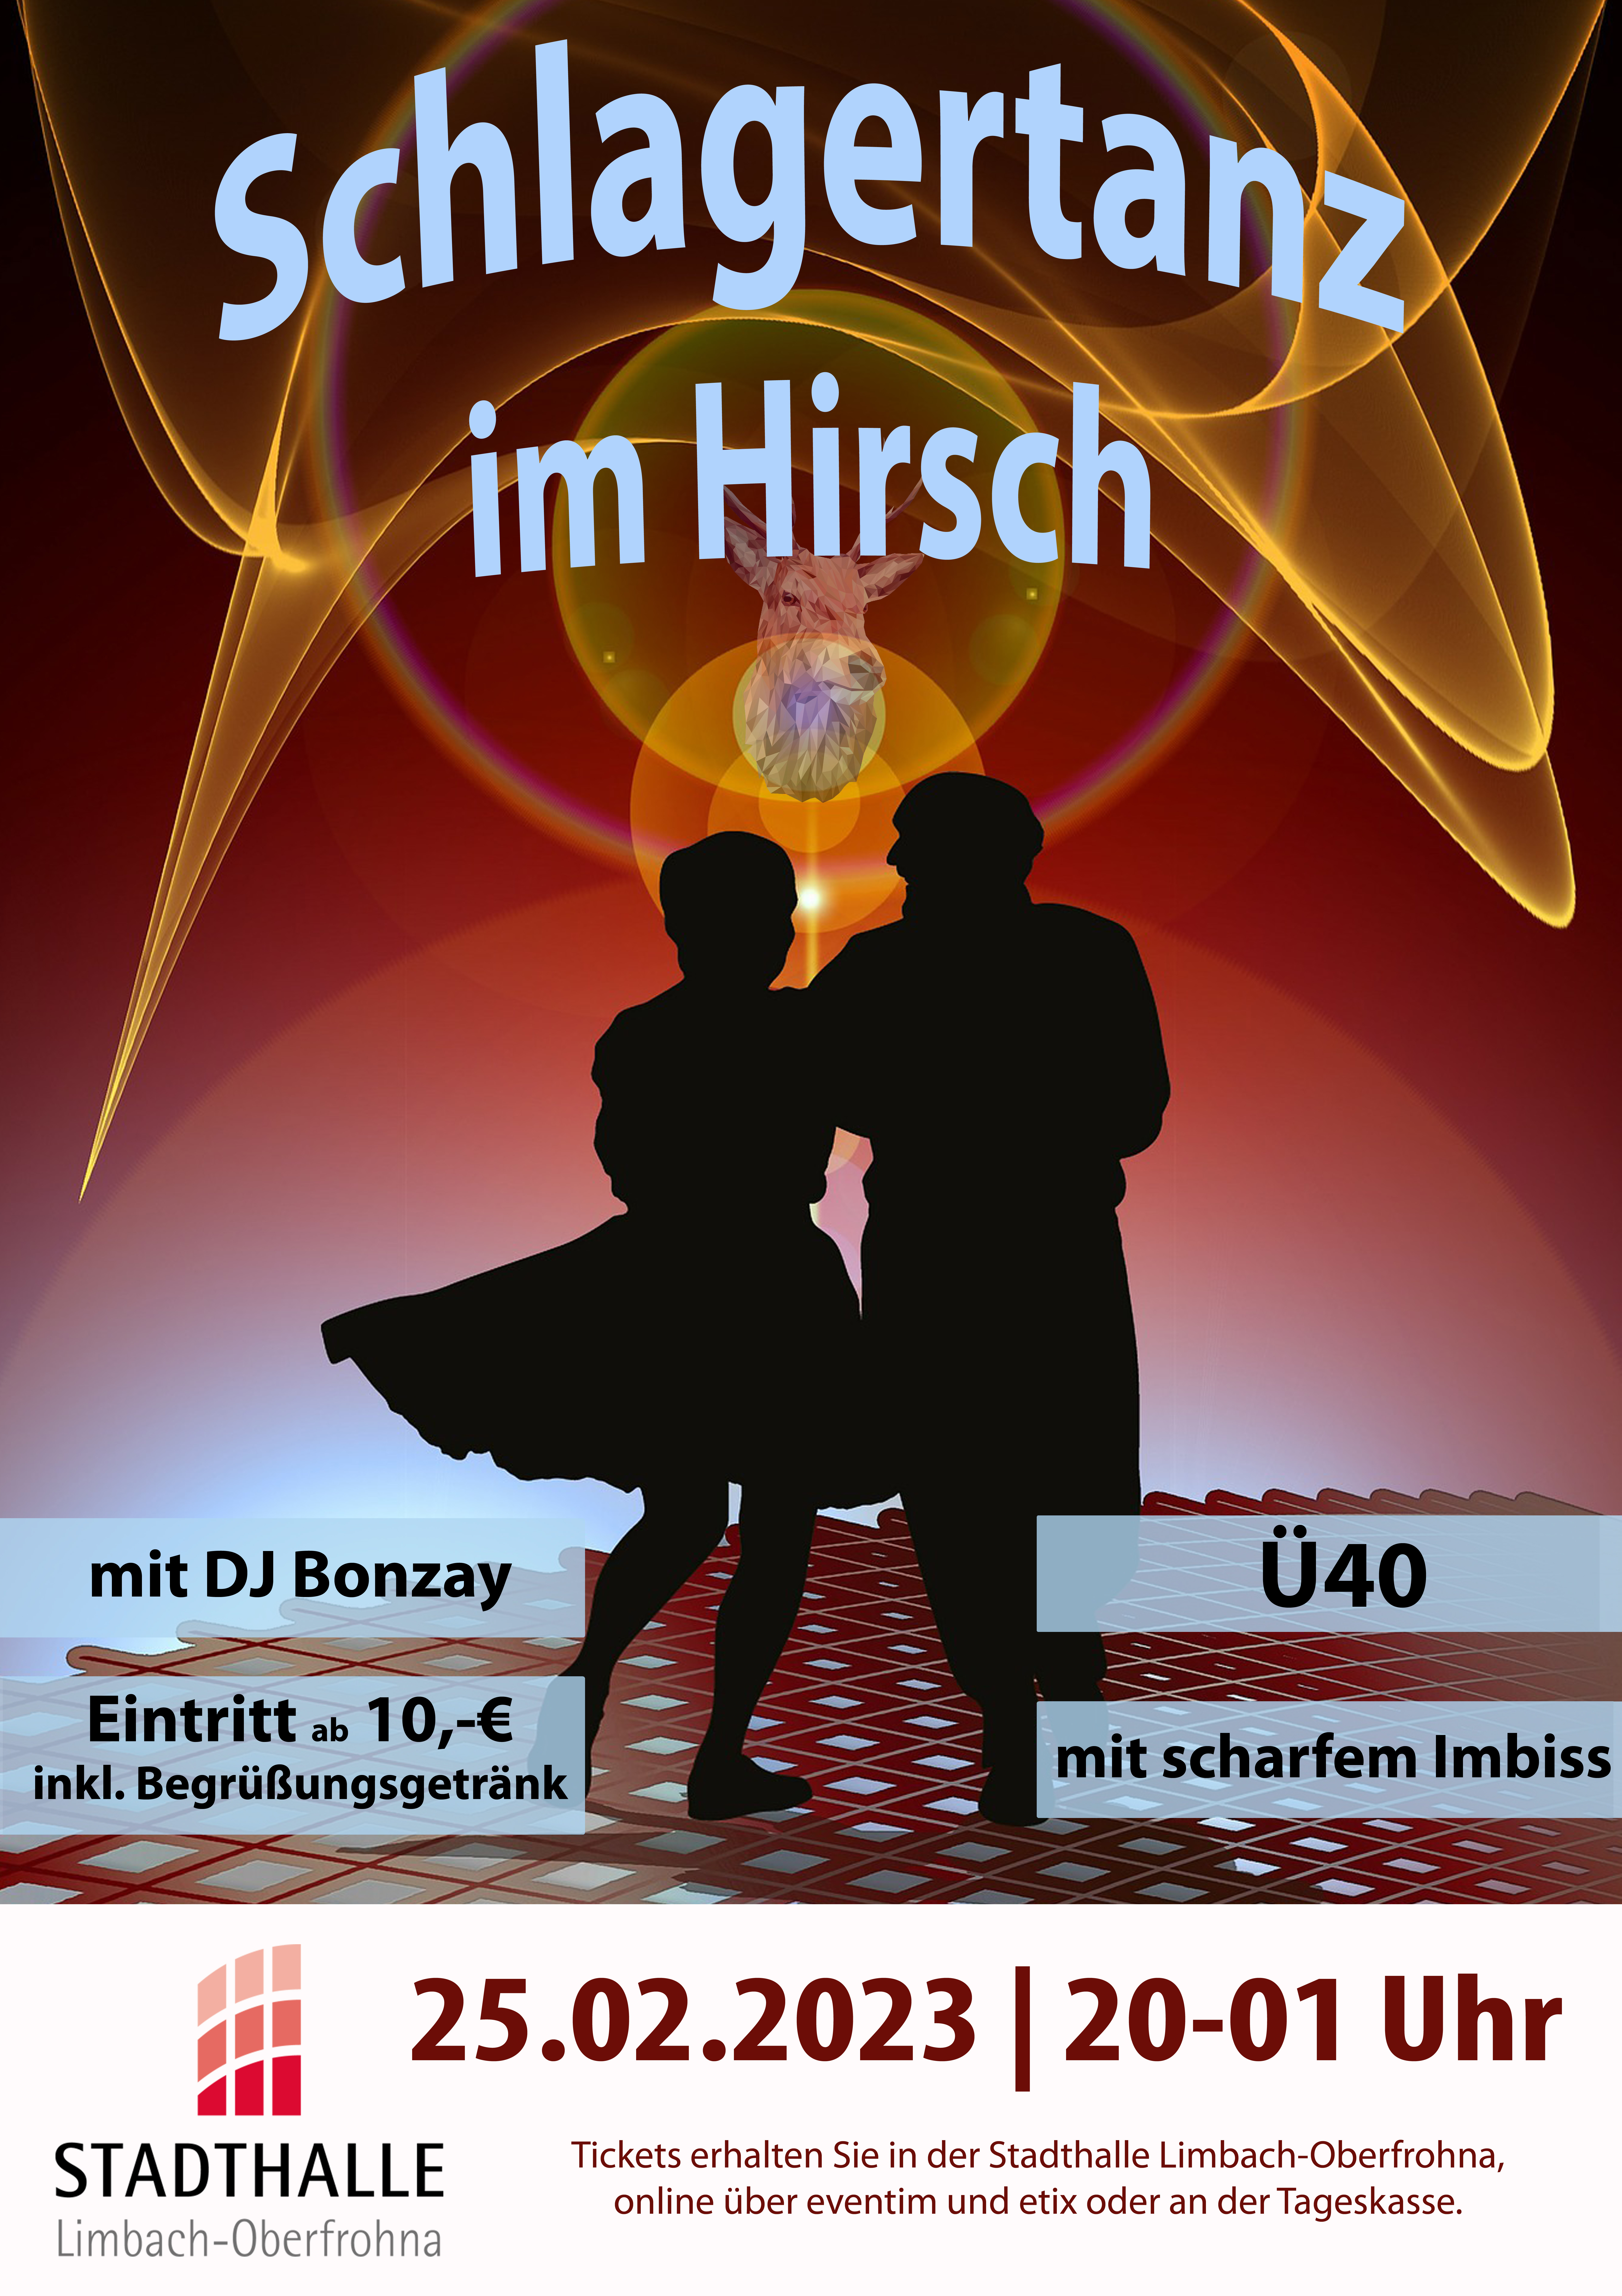 Schlagertanz im Hirsch (Ü40)